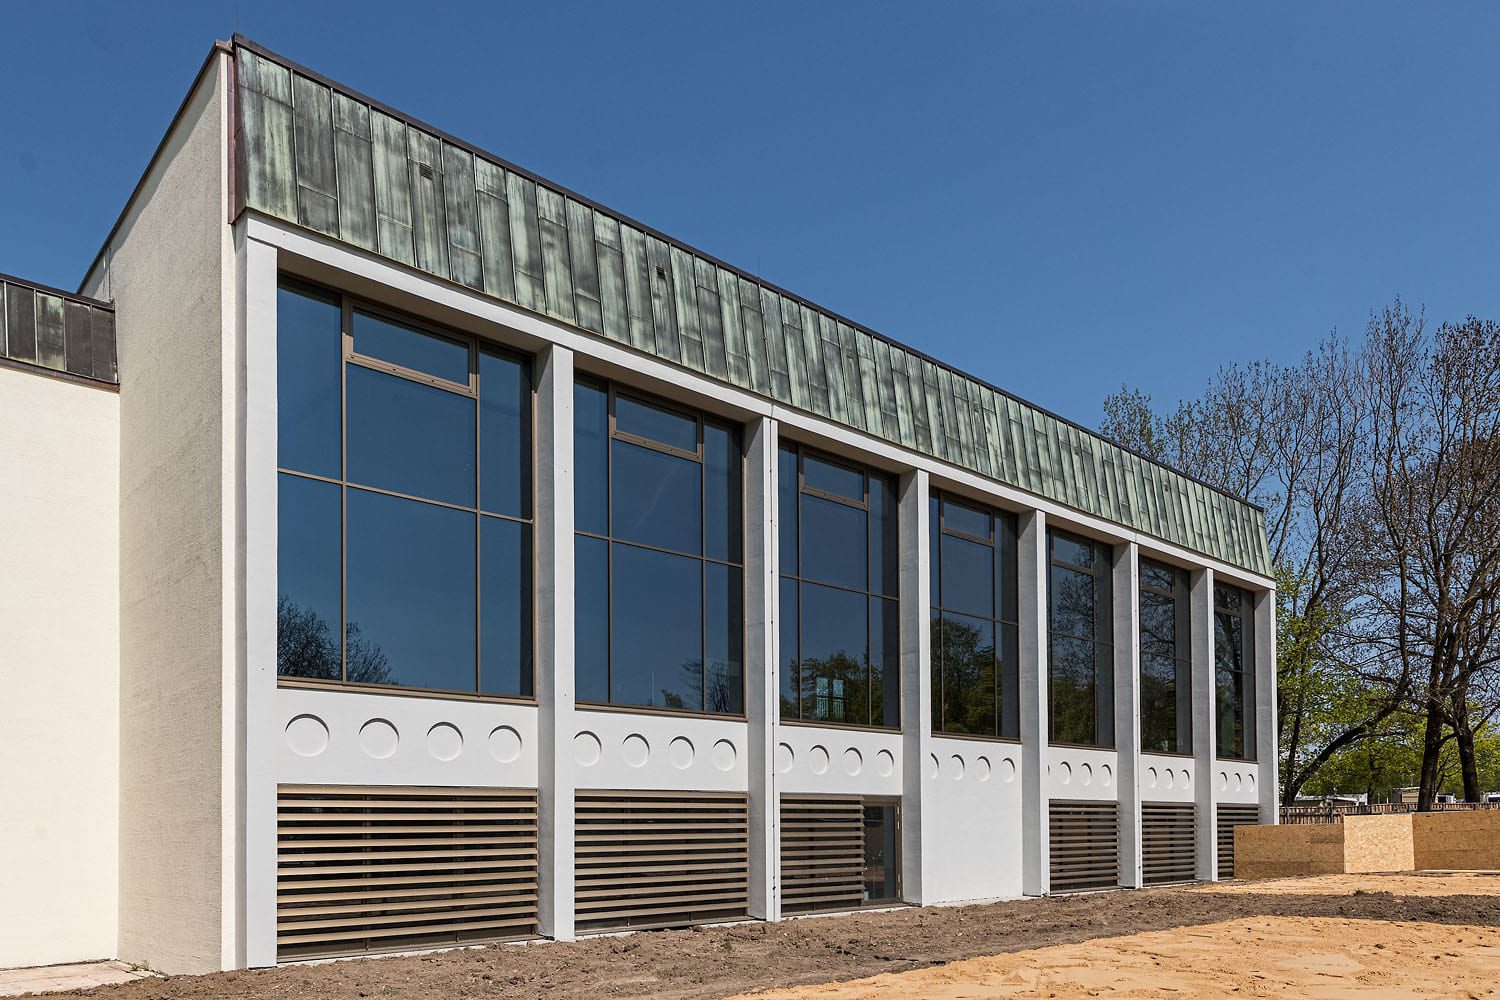 Plärrerbad Augsburg mit neuer P-R-Fassade mit Sonnenschutzglas, feststehenden ABL-Lamellen